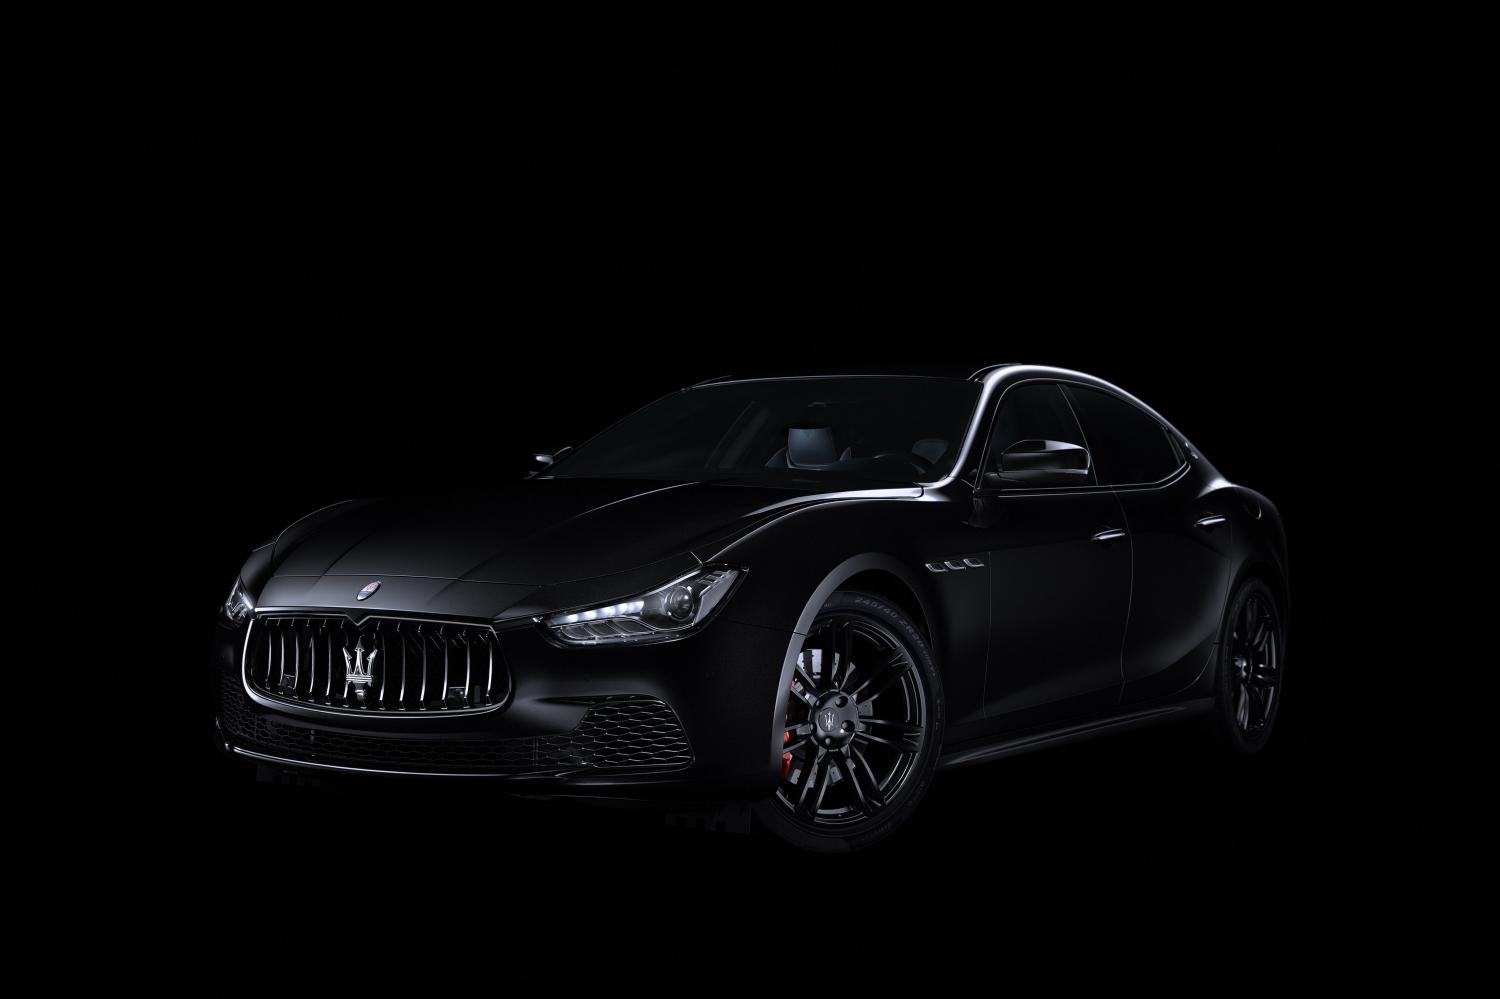 Официально представлена особая модификация седана Maserati Ghibli - Nerissi...